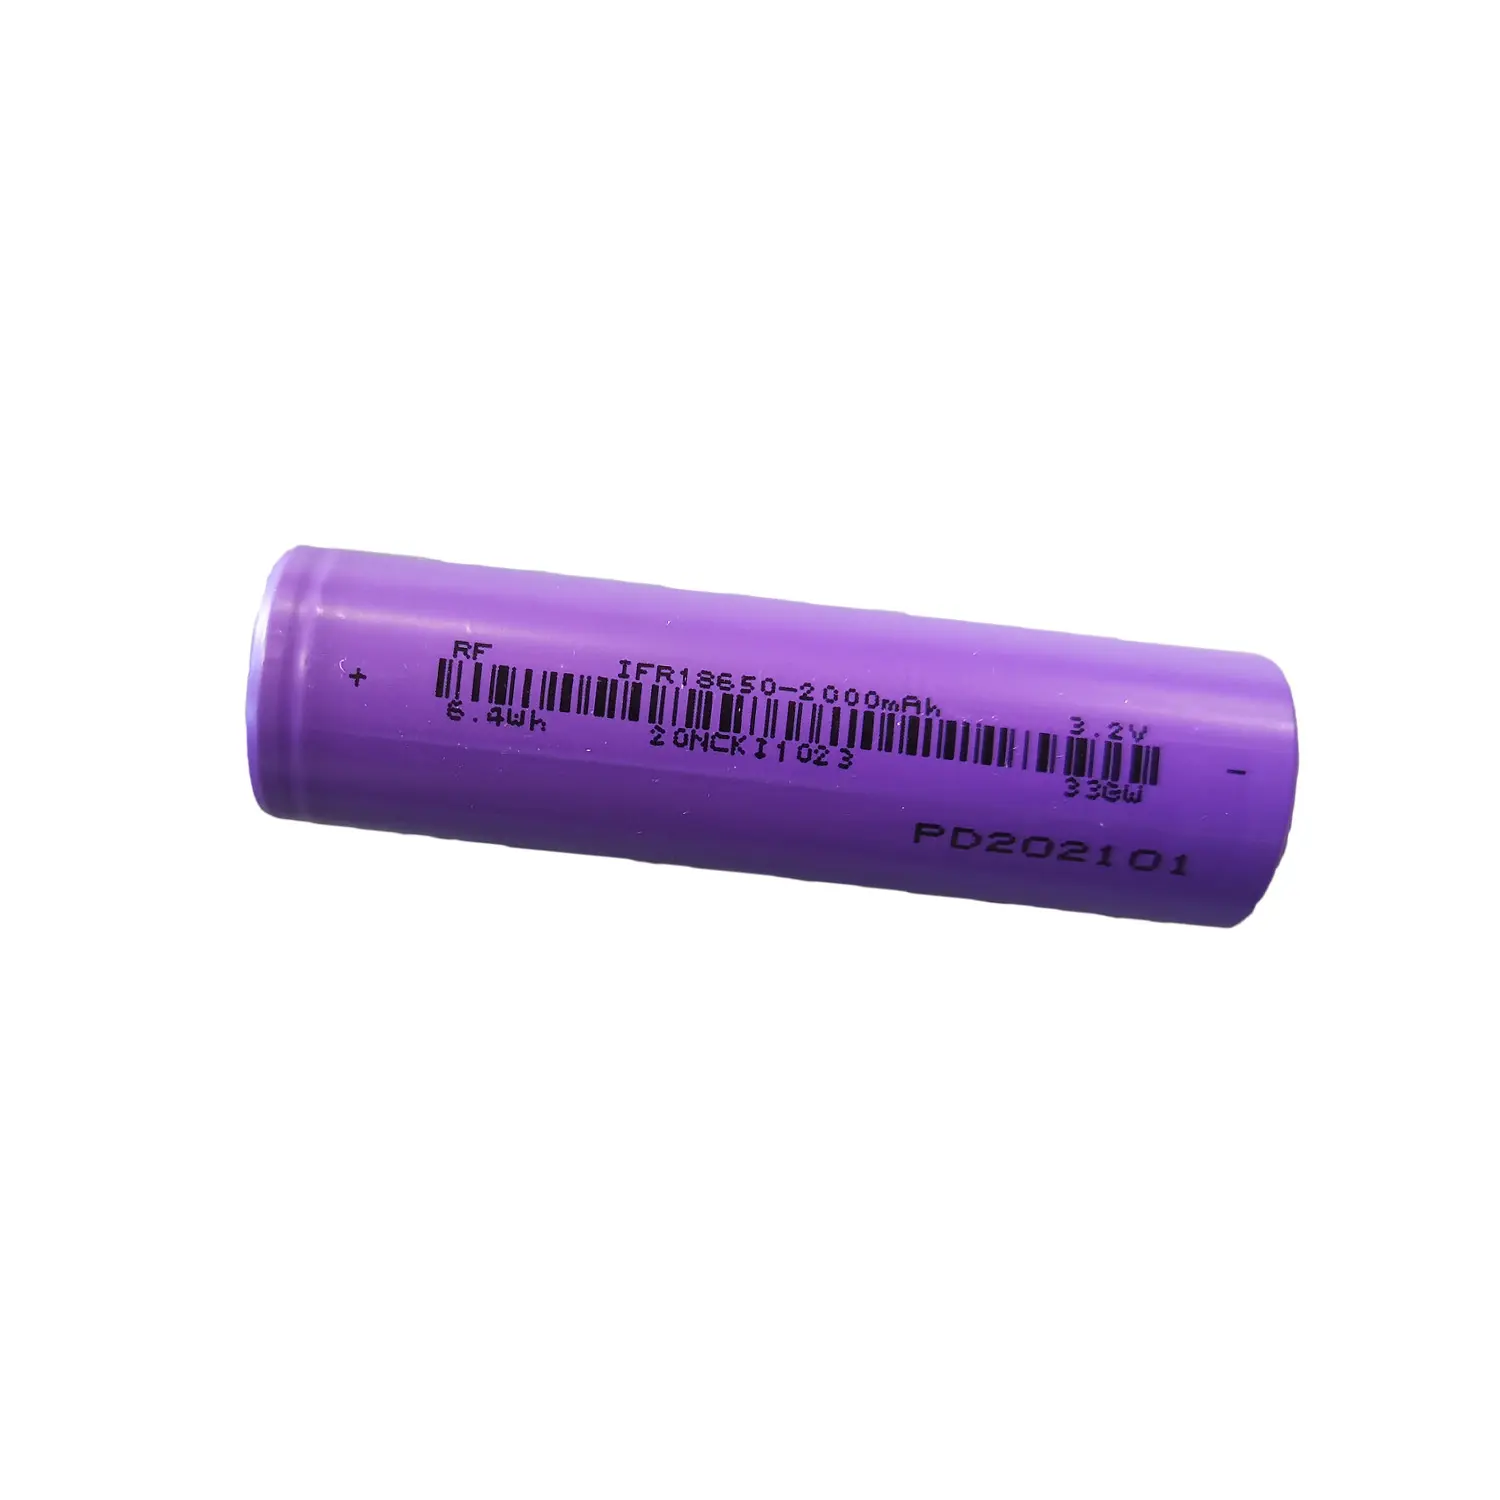 Bateria de lítio ifr18650 3.2 mah lifepo 2000 v, pilha de íon de lítio